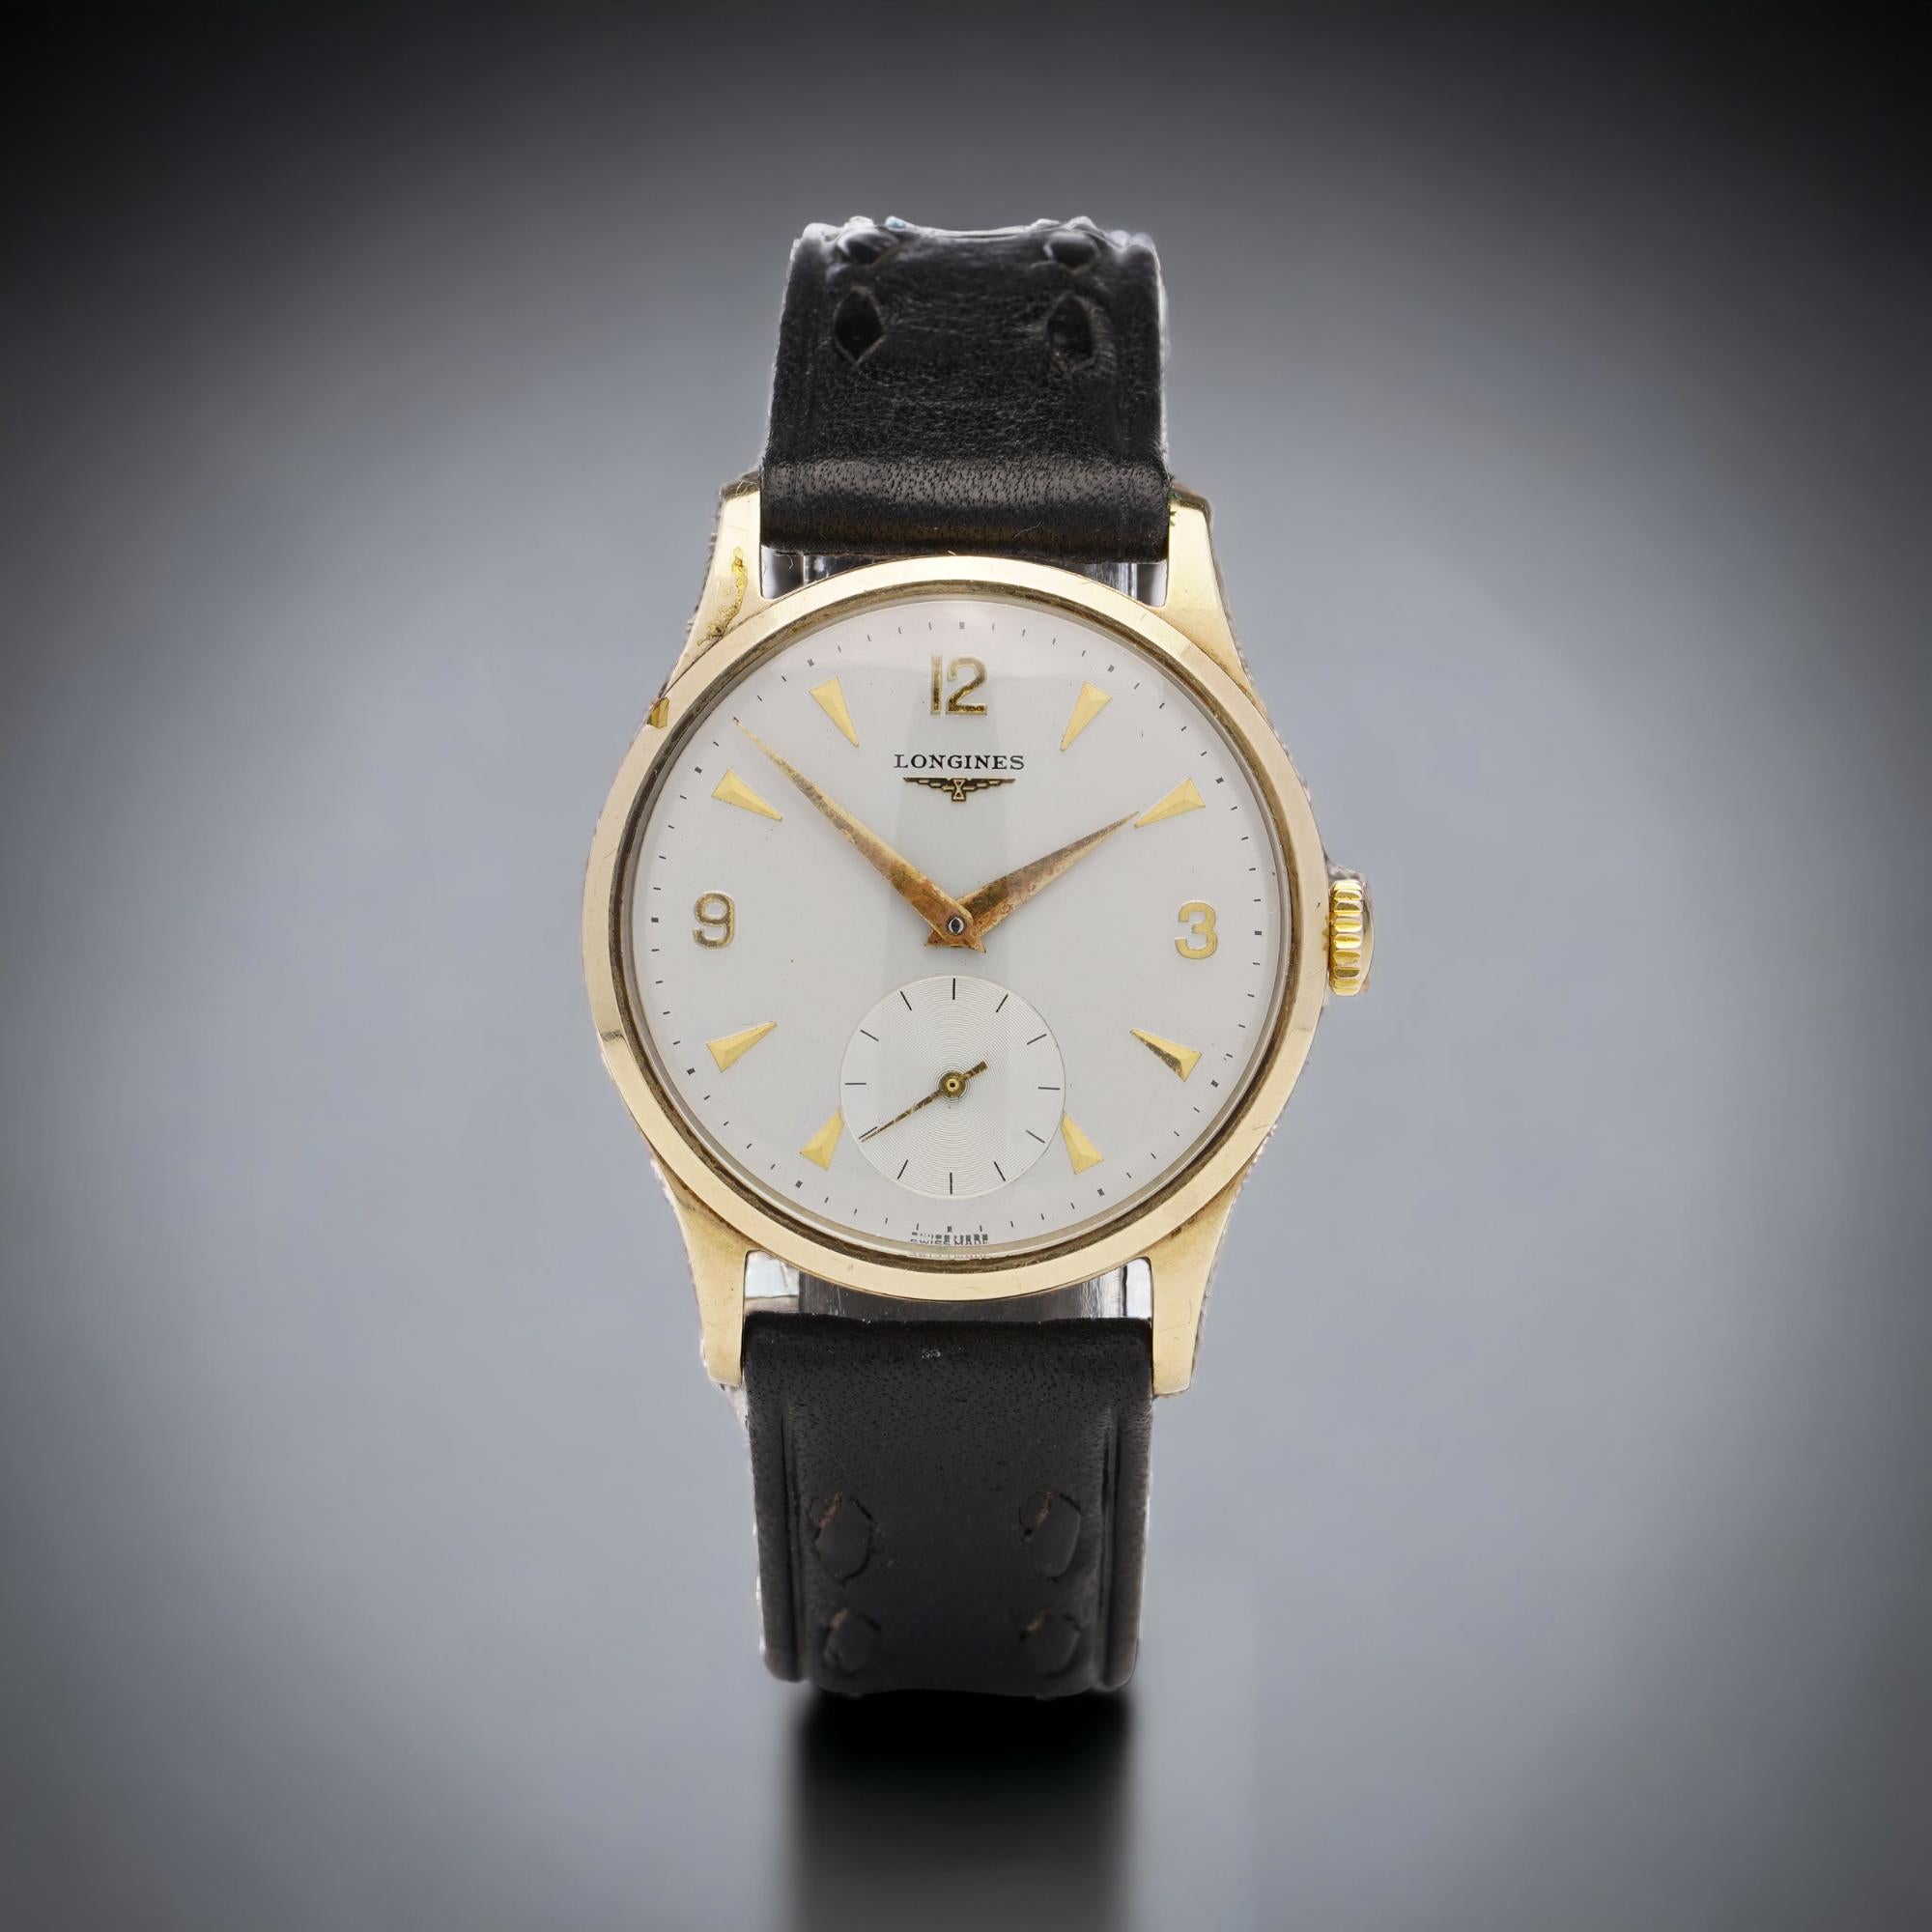 Longines 9kt. Gelbgold Herren Handaufzug Armbanduhr. 
Das Gehäuse wurde in England, Birmingham, 1963 hergestellt.

Jahr 1963
Referenznummer: 503
Besonderheiten des Artikels:
Gehäusedurchmesser (ohne Krone): 33 mm
MATERIAL des Gehäuses: 9kt. Gold.